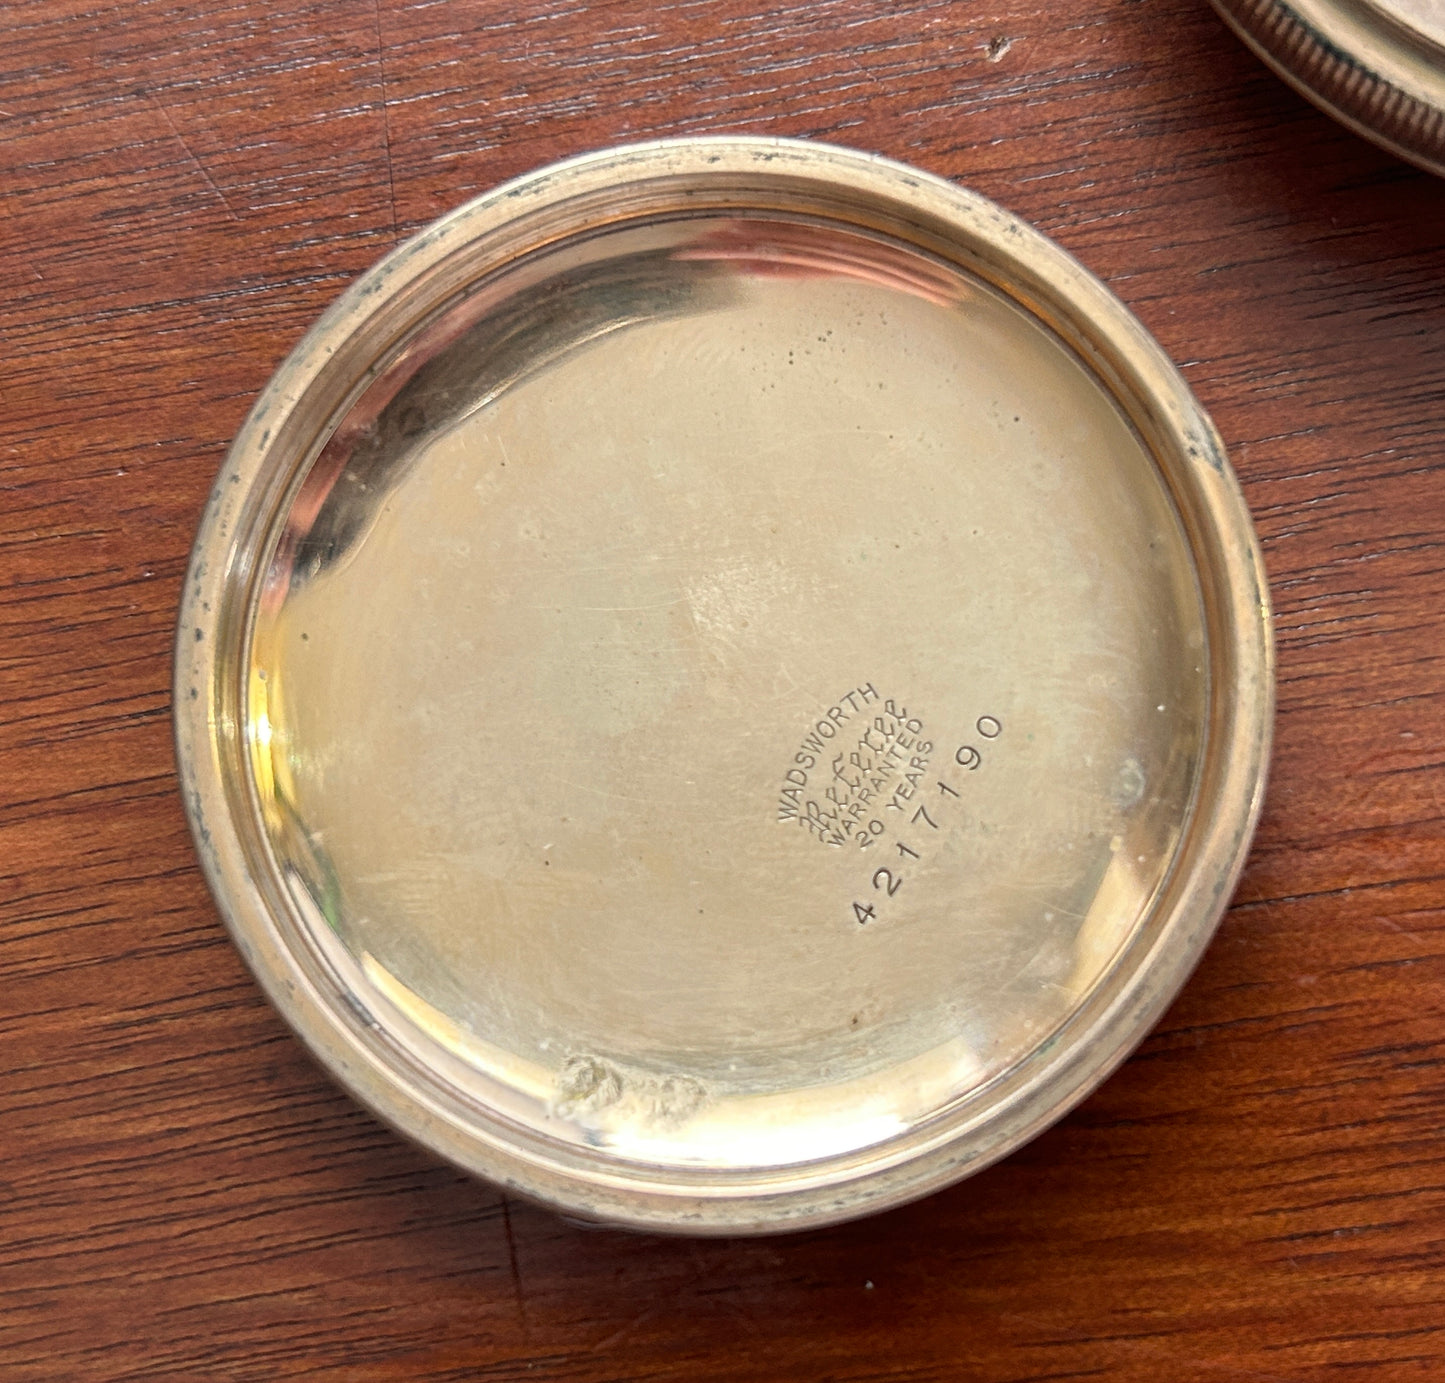 1919 Antique Elgin Gold Filled Pocket Watch Grade 288 18s 7j